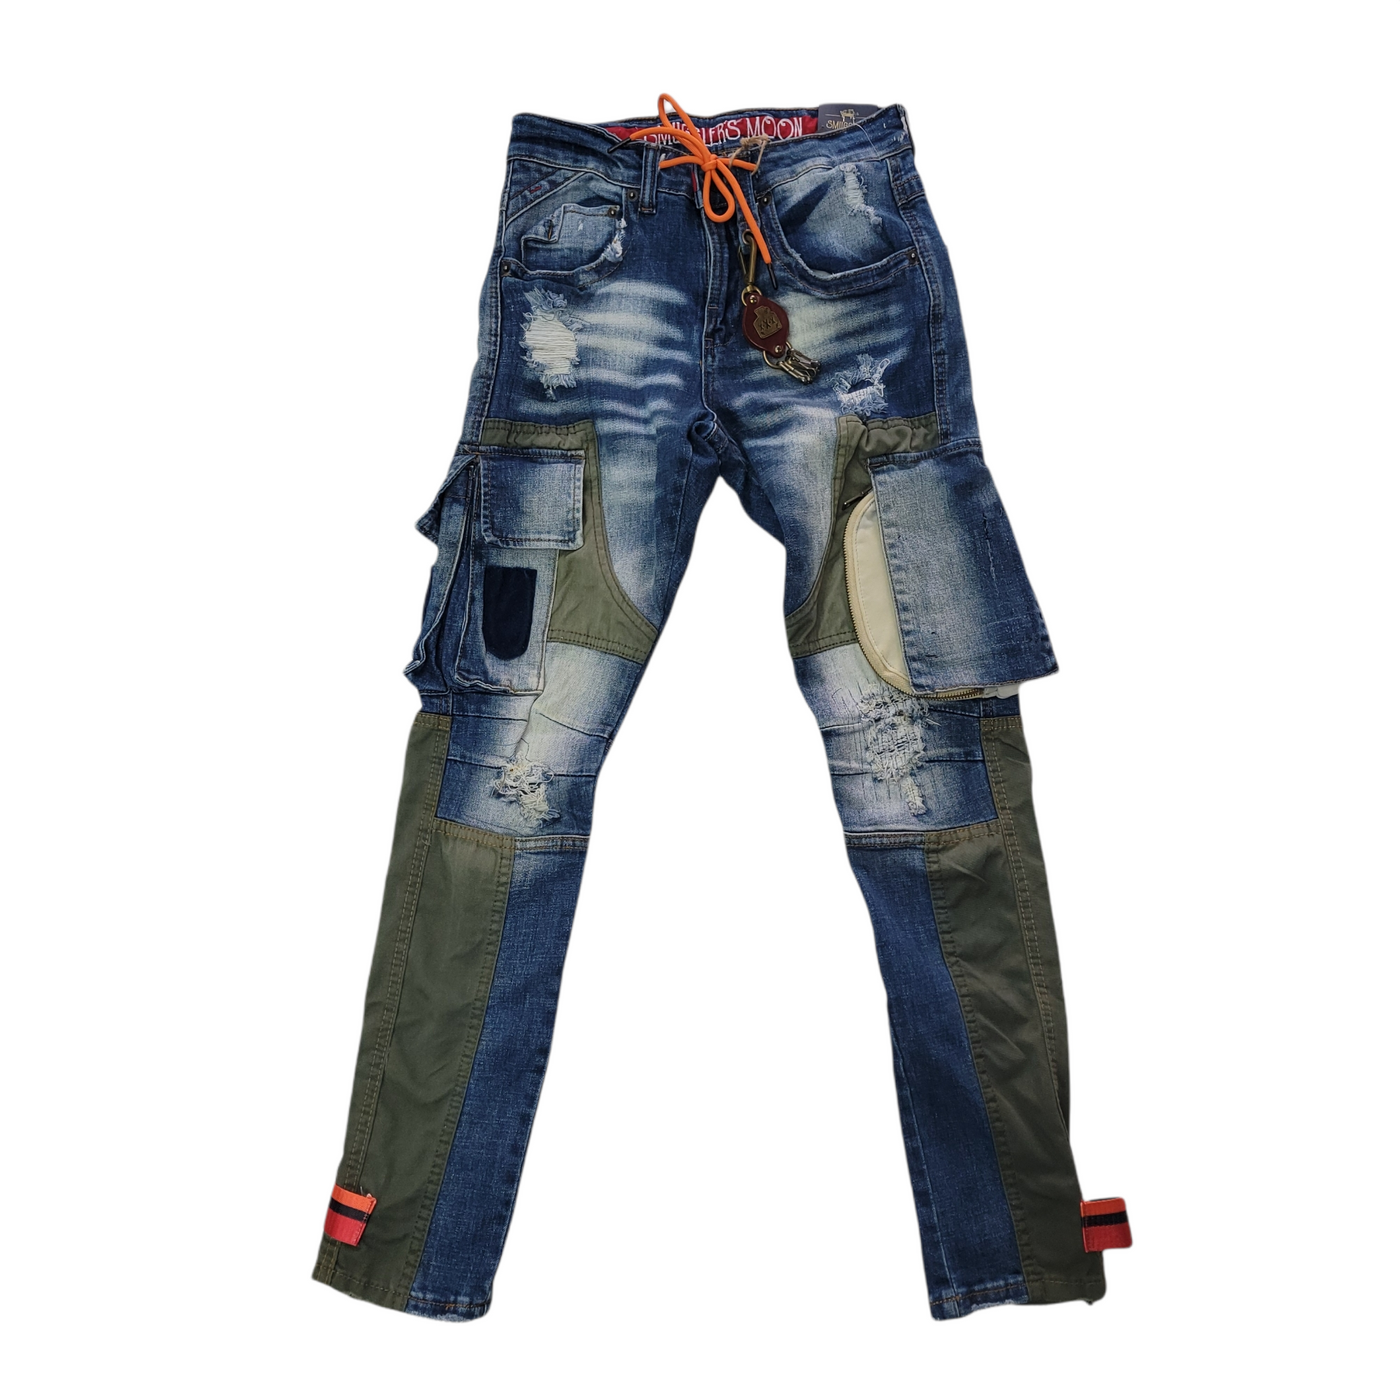 Smugglers hybrid jeans